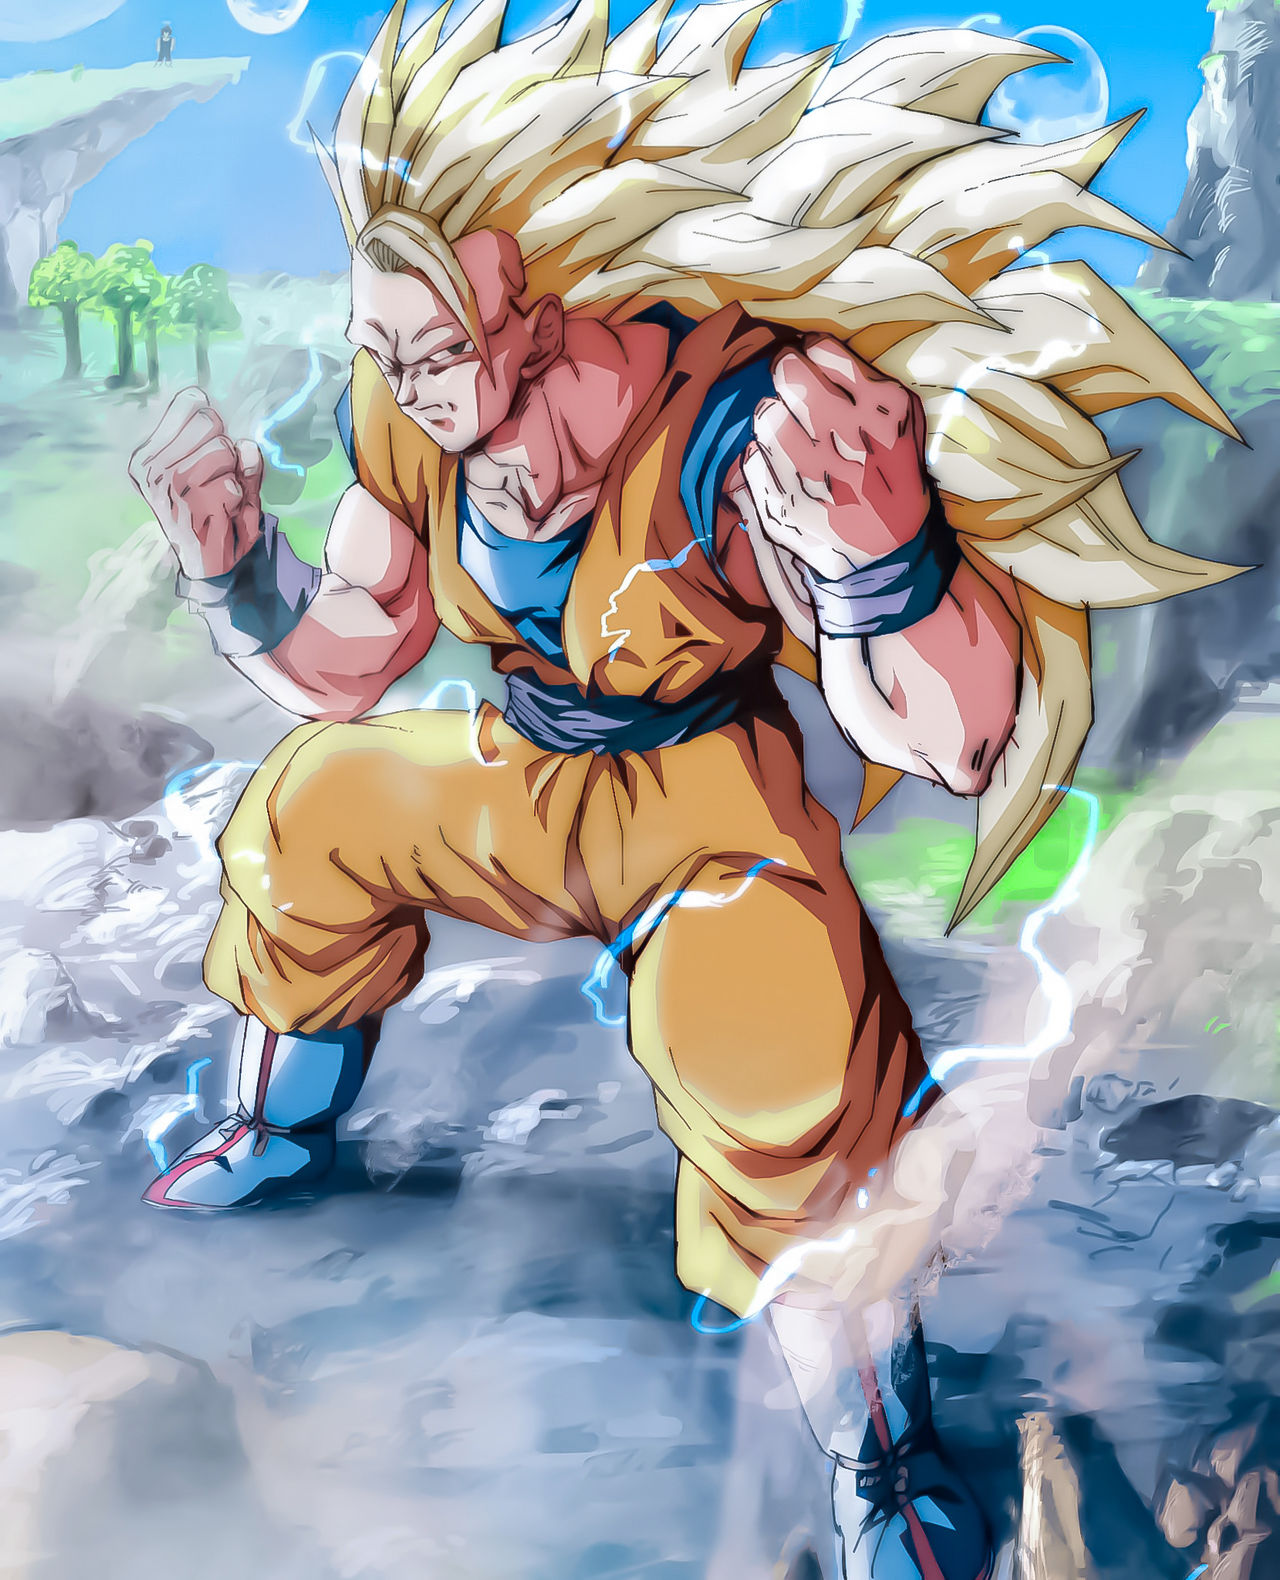 Super Saiyan 3 Goku by SatZBoom on DeviantArt